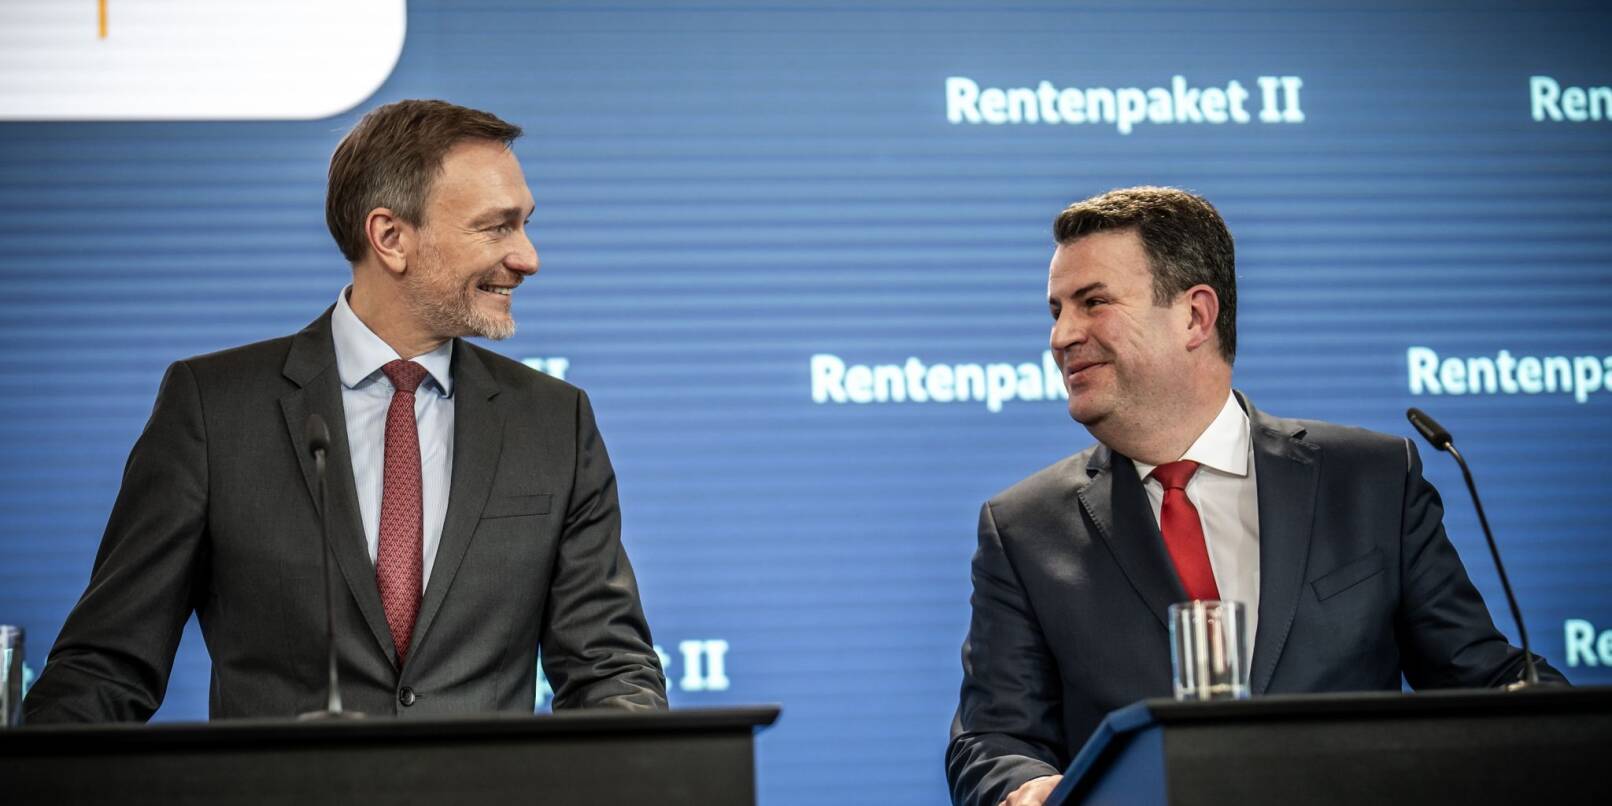 Finanzminister Christian Lindner (l) und Arbeitsminister Hubertus Heil stellen ihr Renten-Reformpaket in Berlin vor.